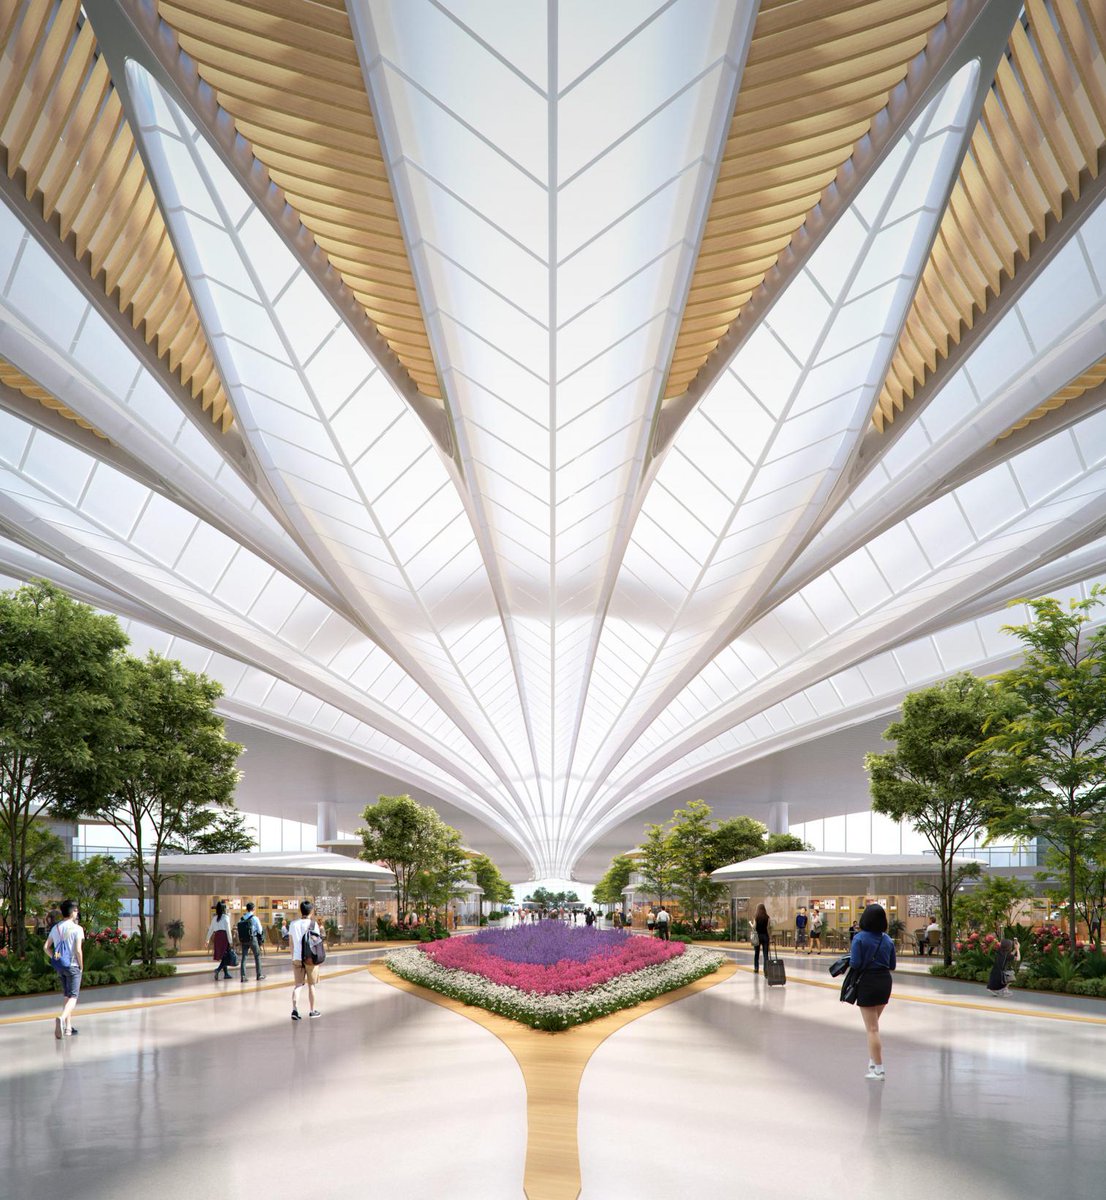 MAD Architects, ganadores del concurso internacional para construir la Terminal 3 del aeropuerto de Changchun, China. La cubierta en forma de abanico permite el acceso de luz natural en el vestíbulo de la zona de embarque...
arquitecturaviva.com/obras/nueva-te…
@madarchitects_